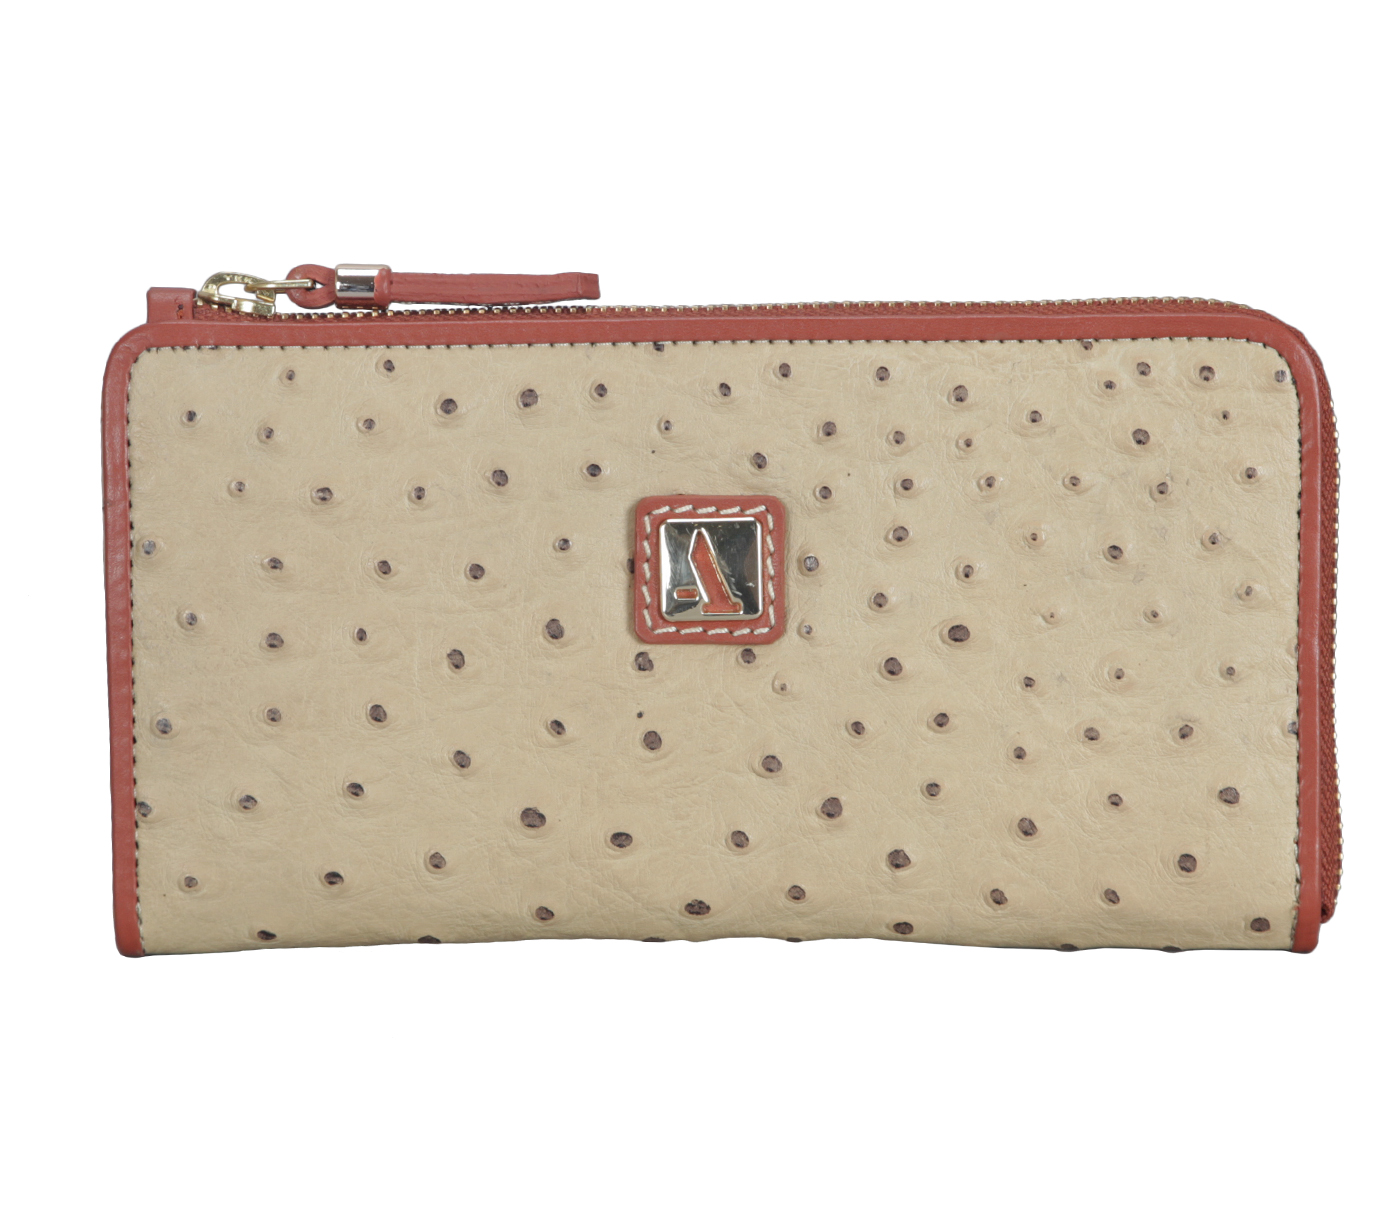 W319-Jutte-Women's Wallet And Clutch In Genuine Leather - Beige